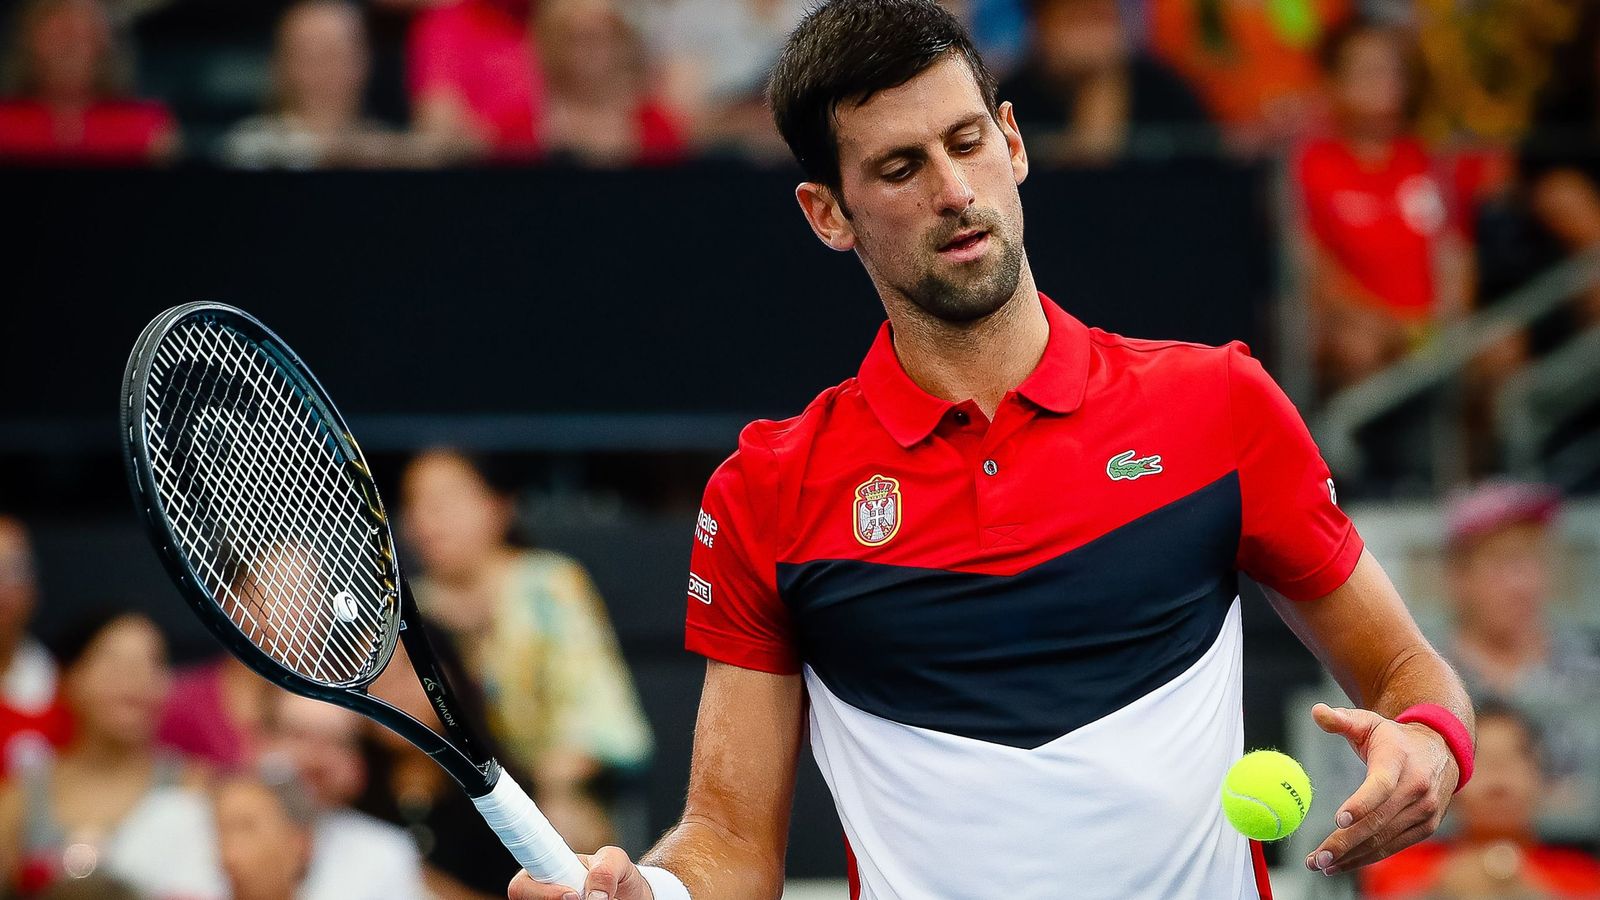 Novak Djokovic helps Serbia reach ATP Cup quarter-finals | Tennis News | Sky Sports